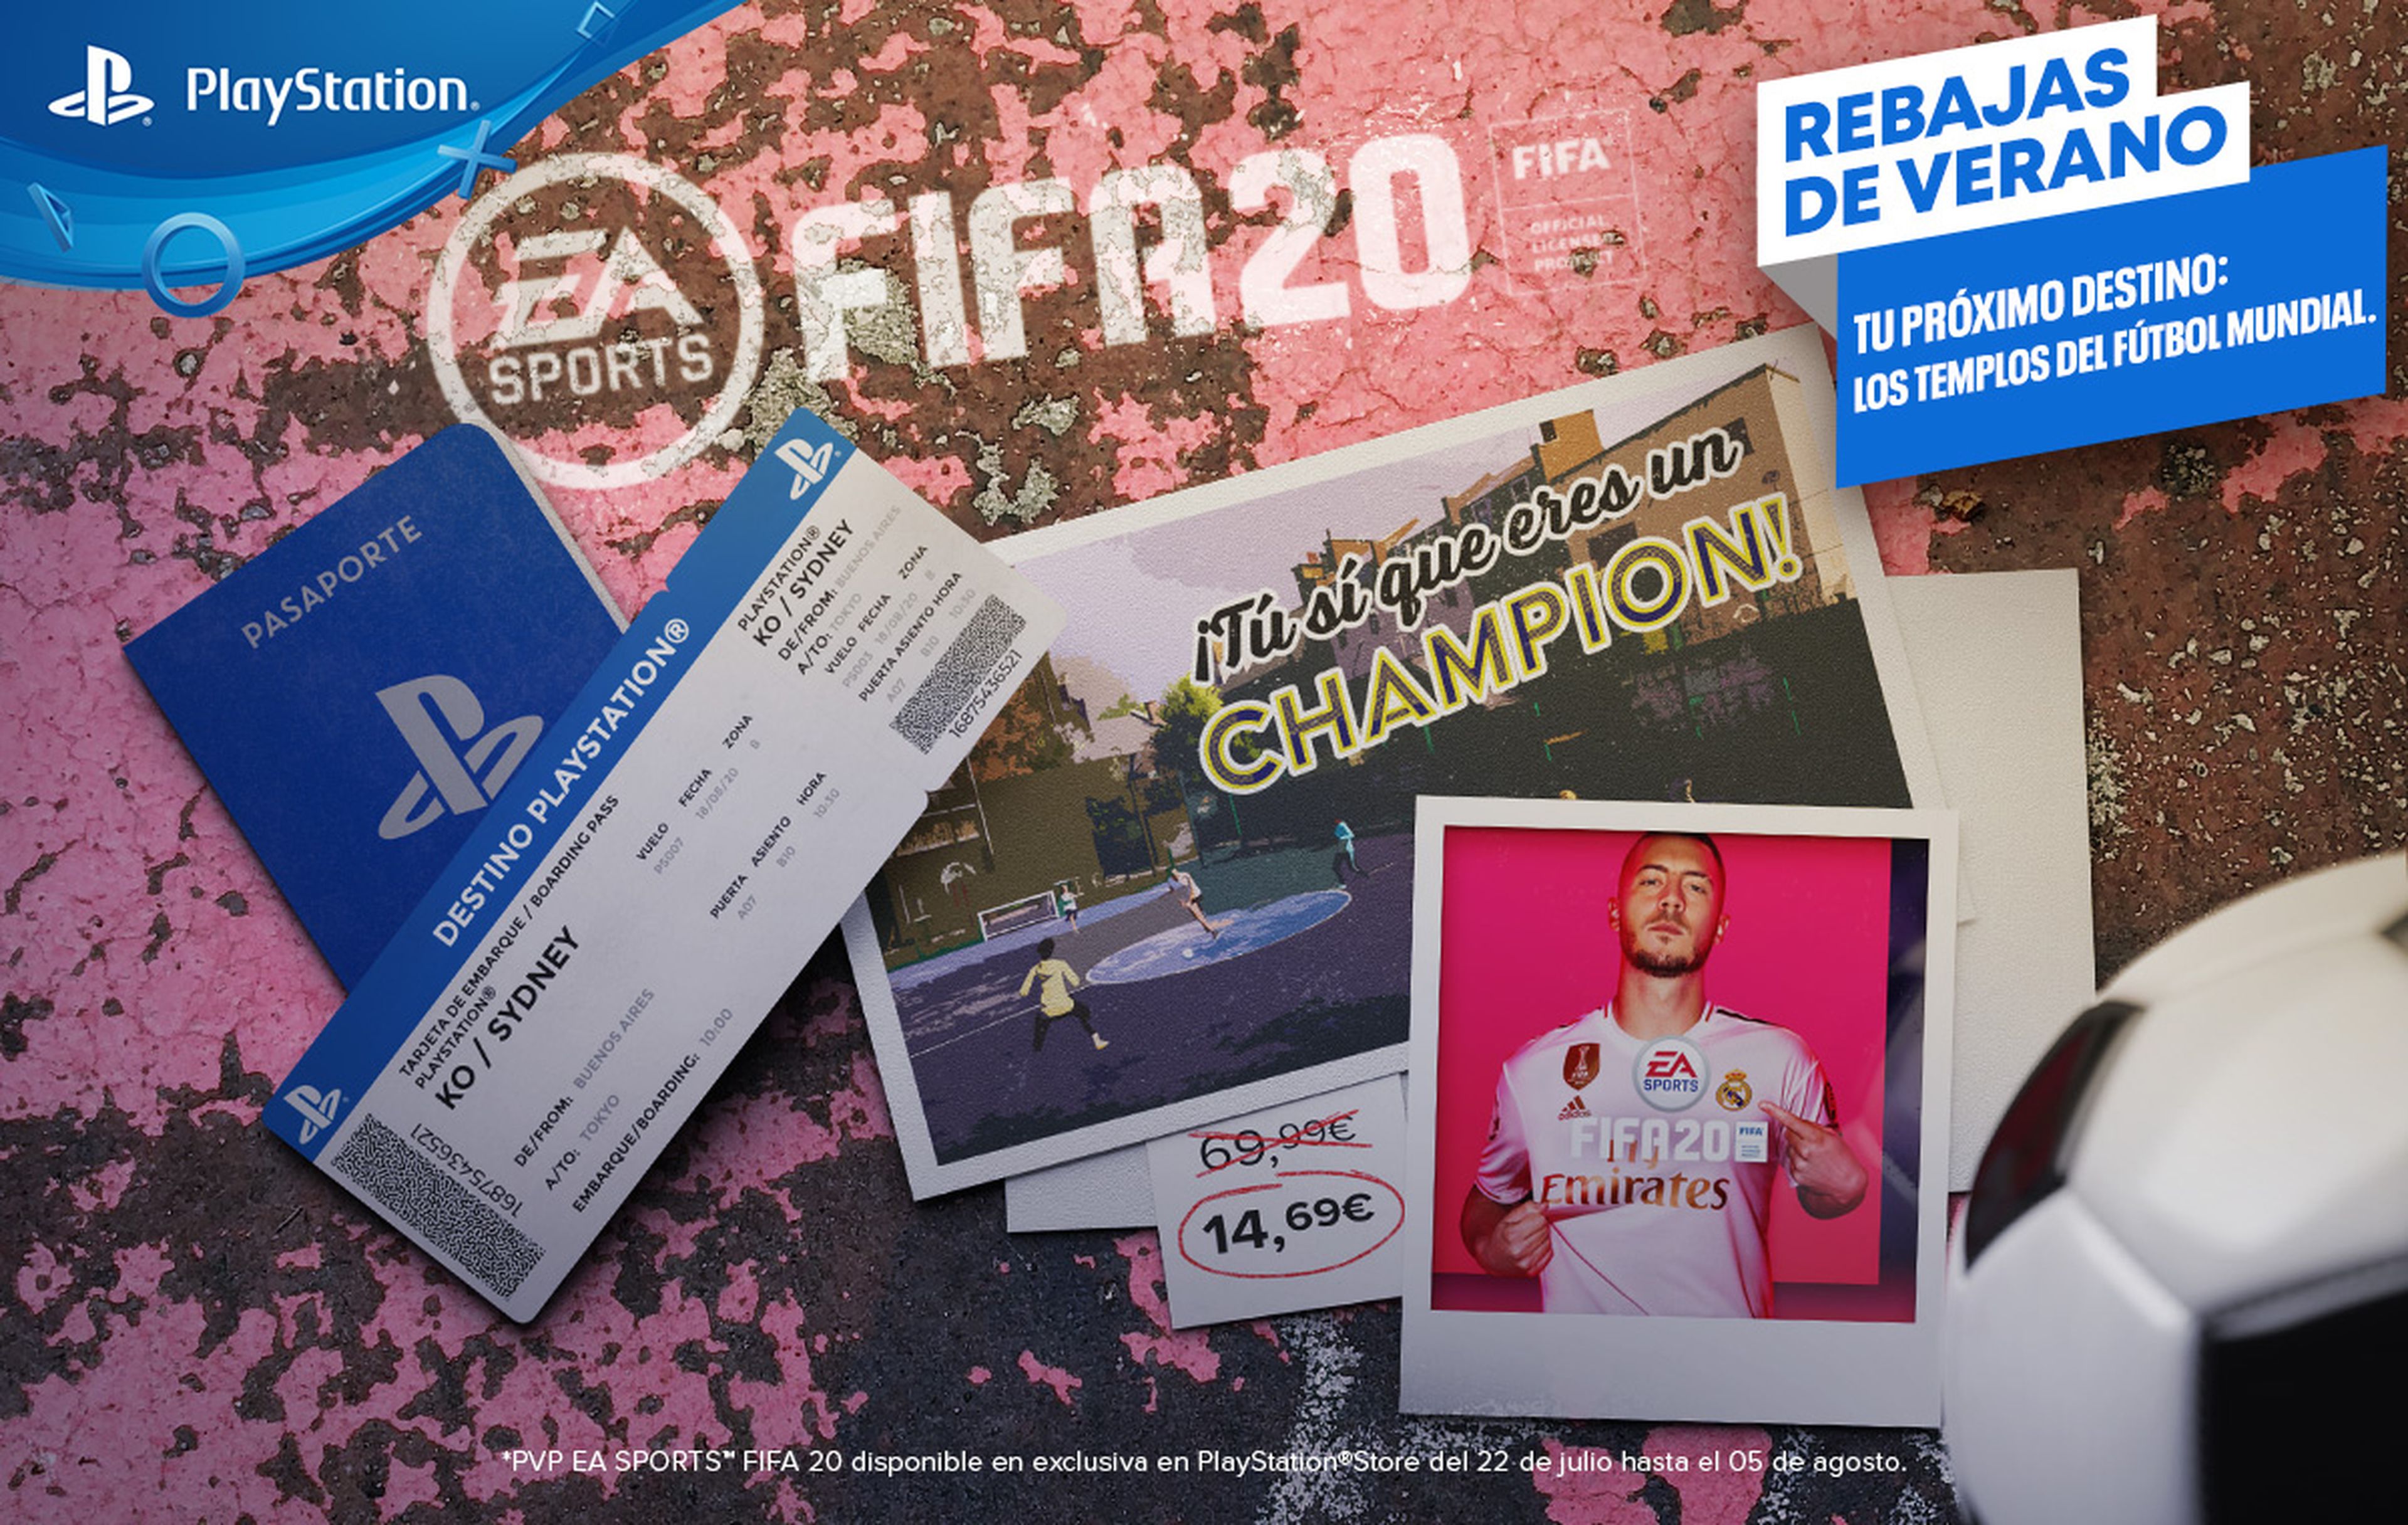 Rebajas de verano PlayStation - FIFA 20